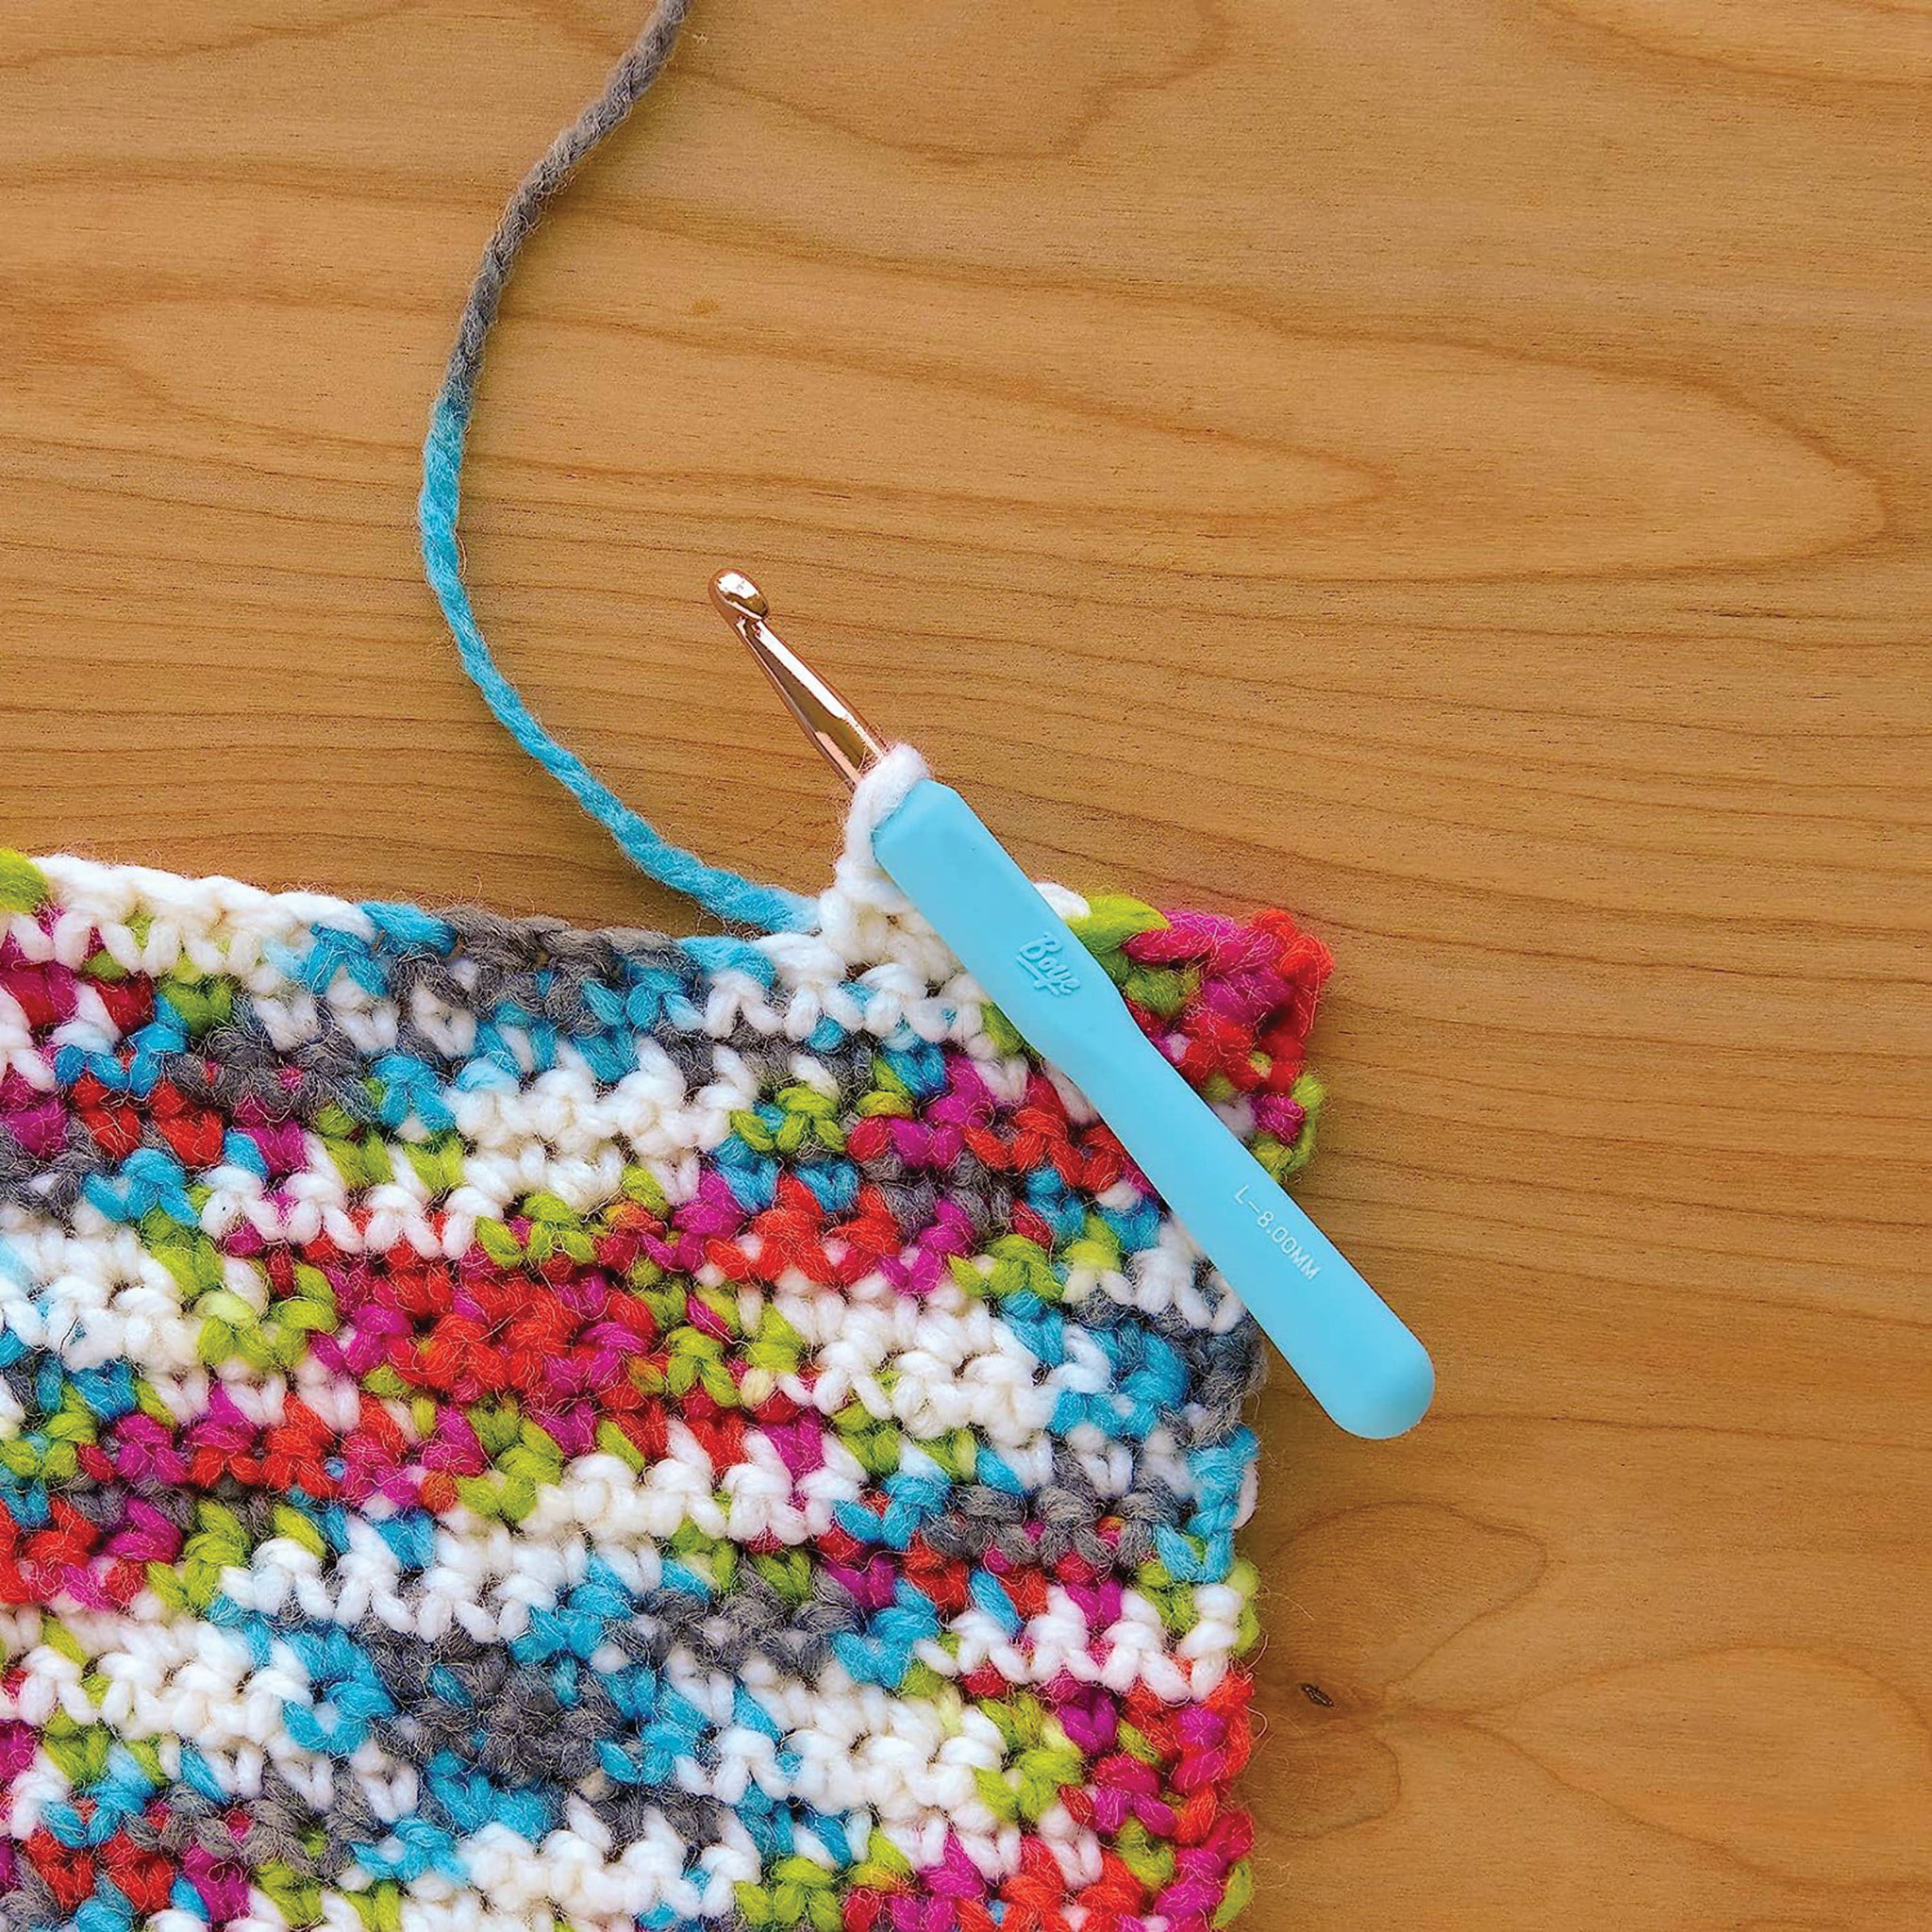 Boye Ergo Crochet Hook Sets